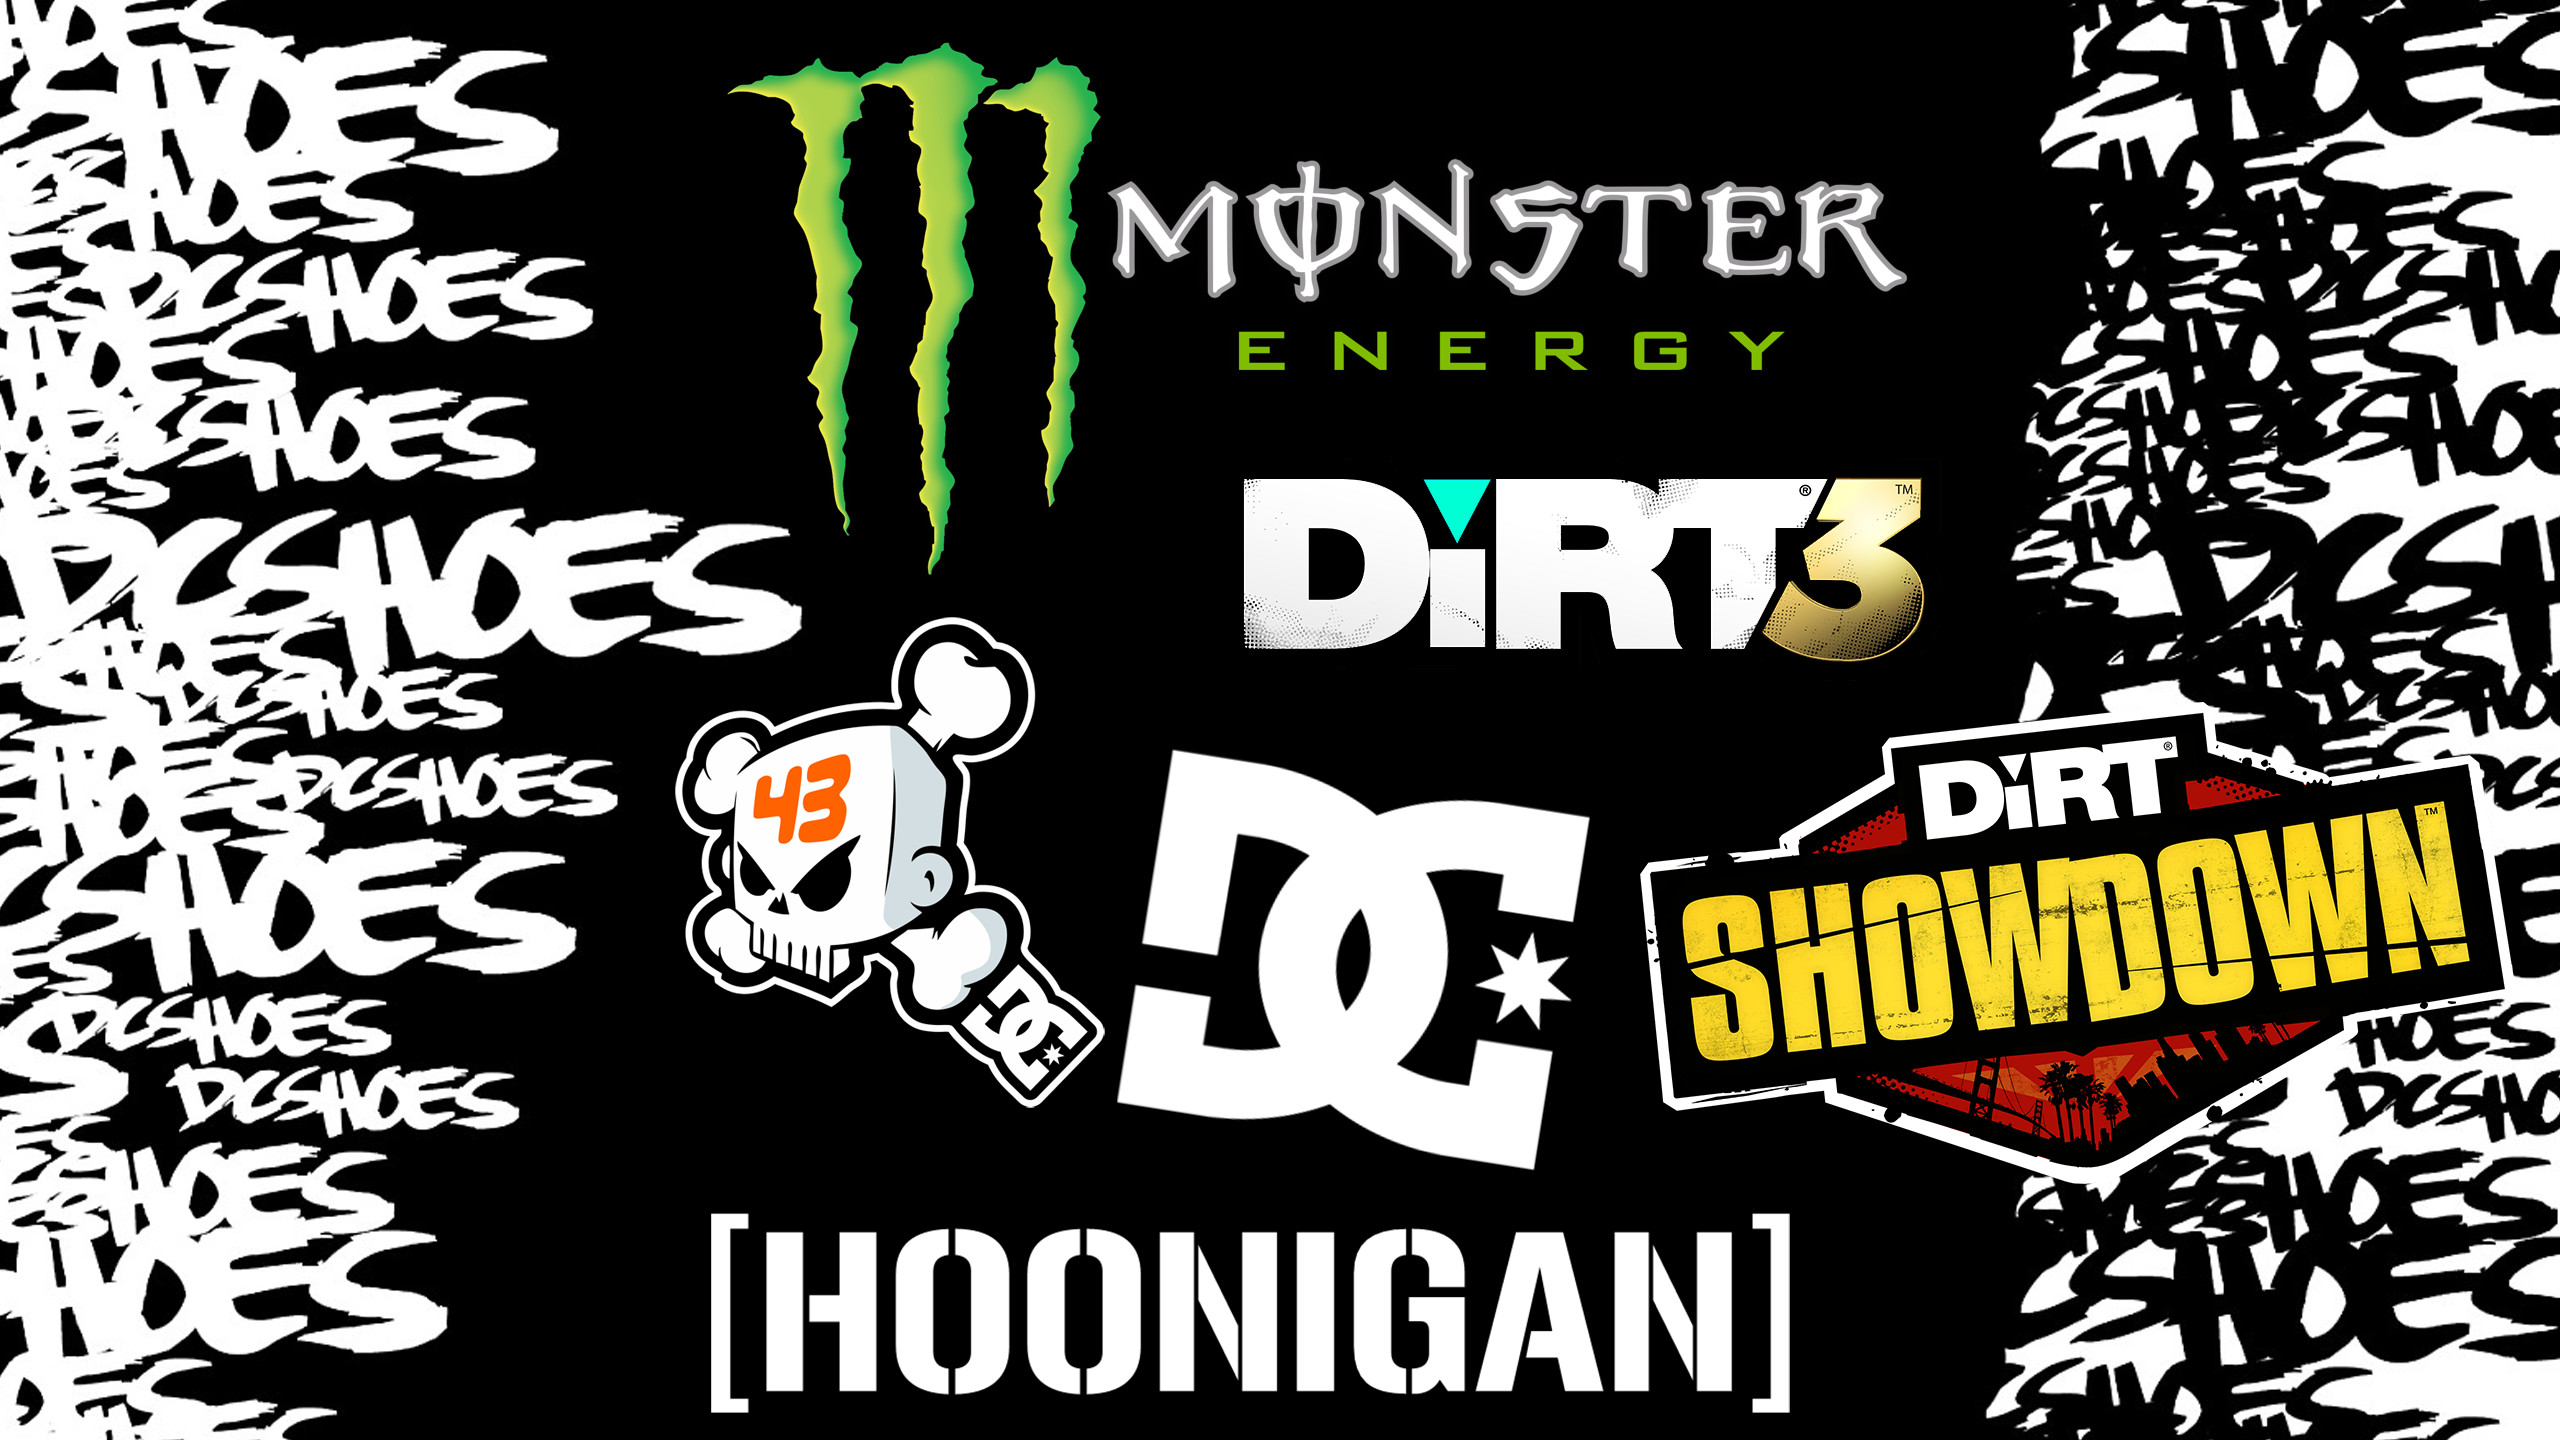 Hoonigan logo wallpaper